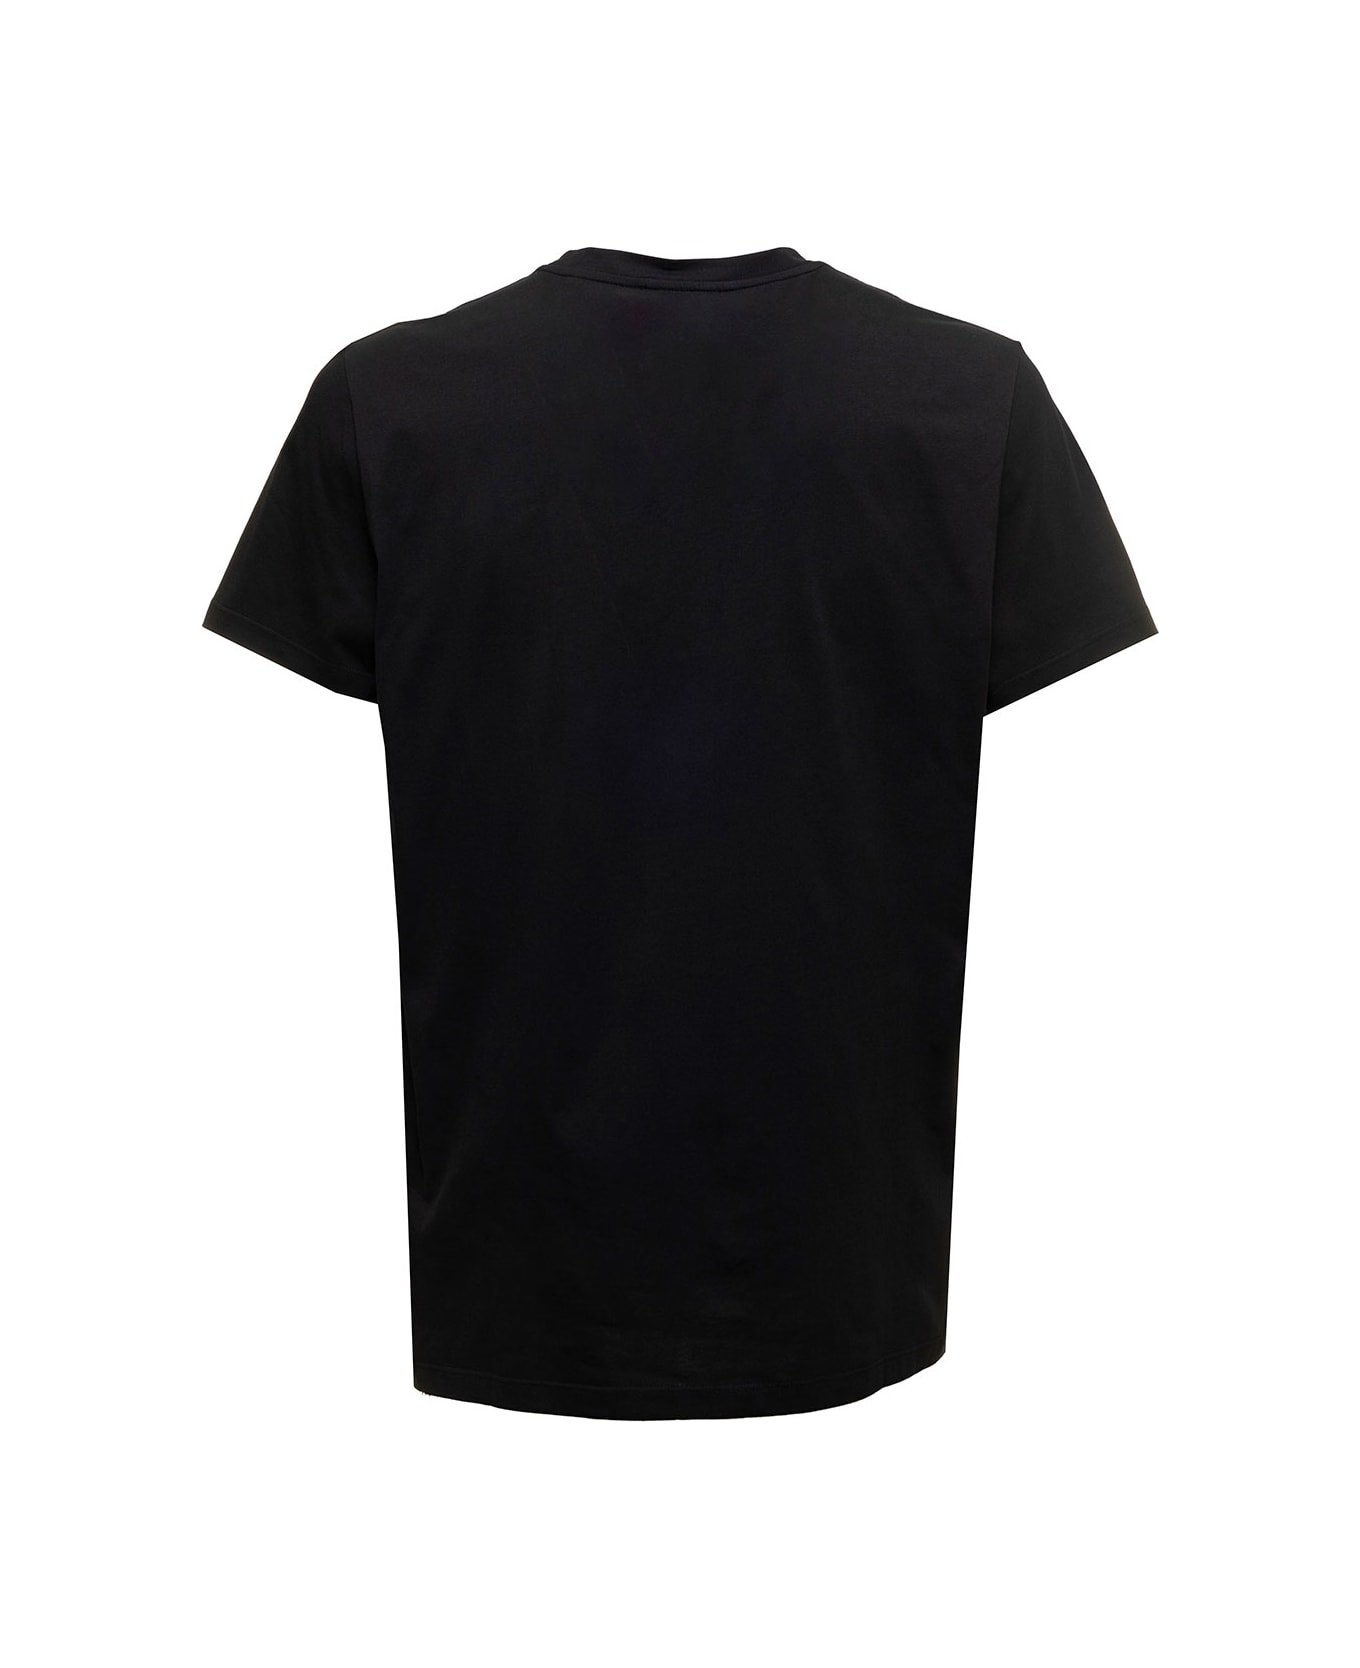 Balmain Black T-shirt With Flock Logo In Cotton Man - Black